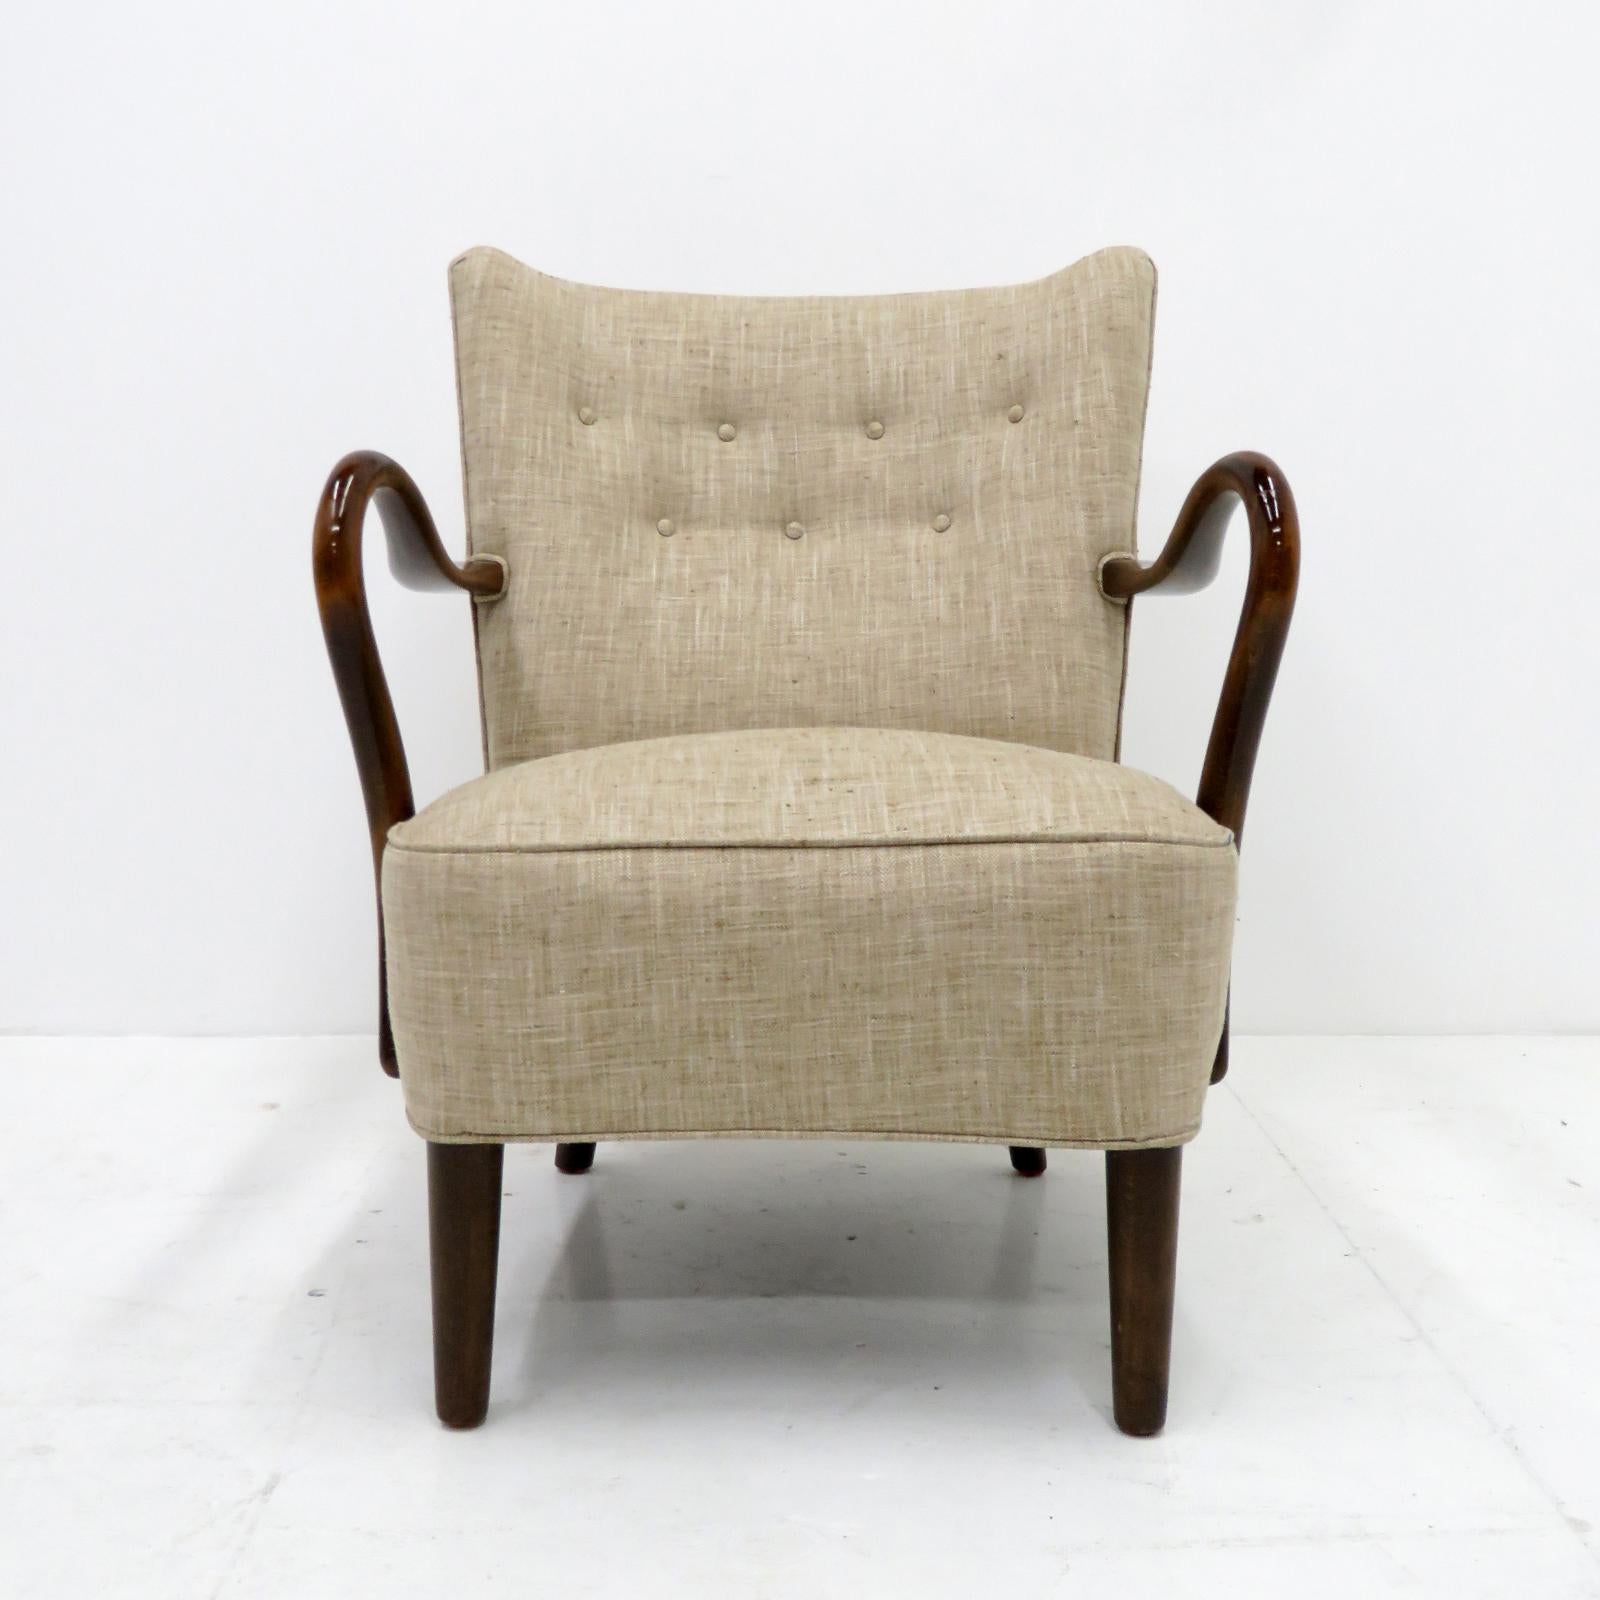 Auffälliger dänischer Sessel mit niedrigem Profil, entworfen von Alfred Christensen, 1950, hergestellt in Slagelse Mobelvaerk, aus dunkel gebeiztem Holz und mit neuer Polsterung.